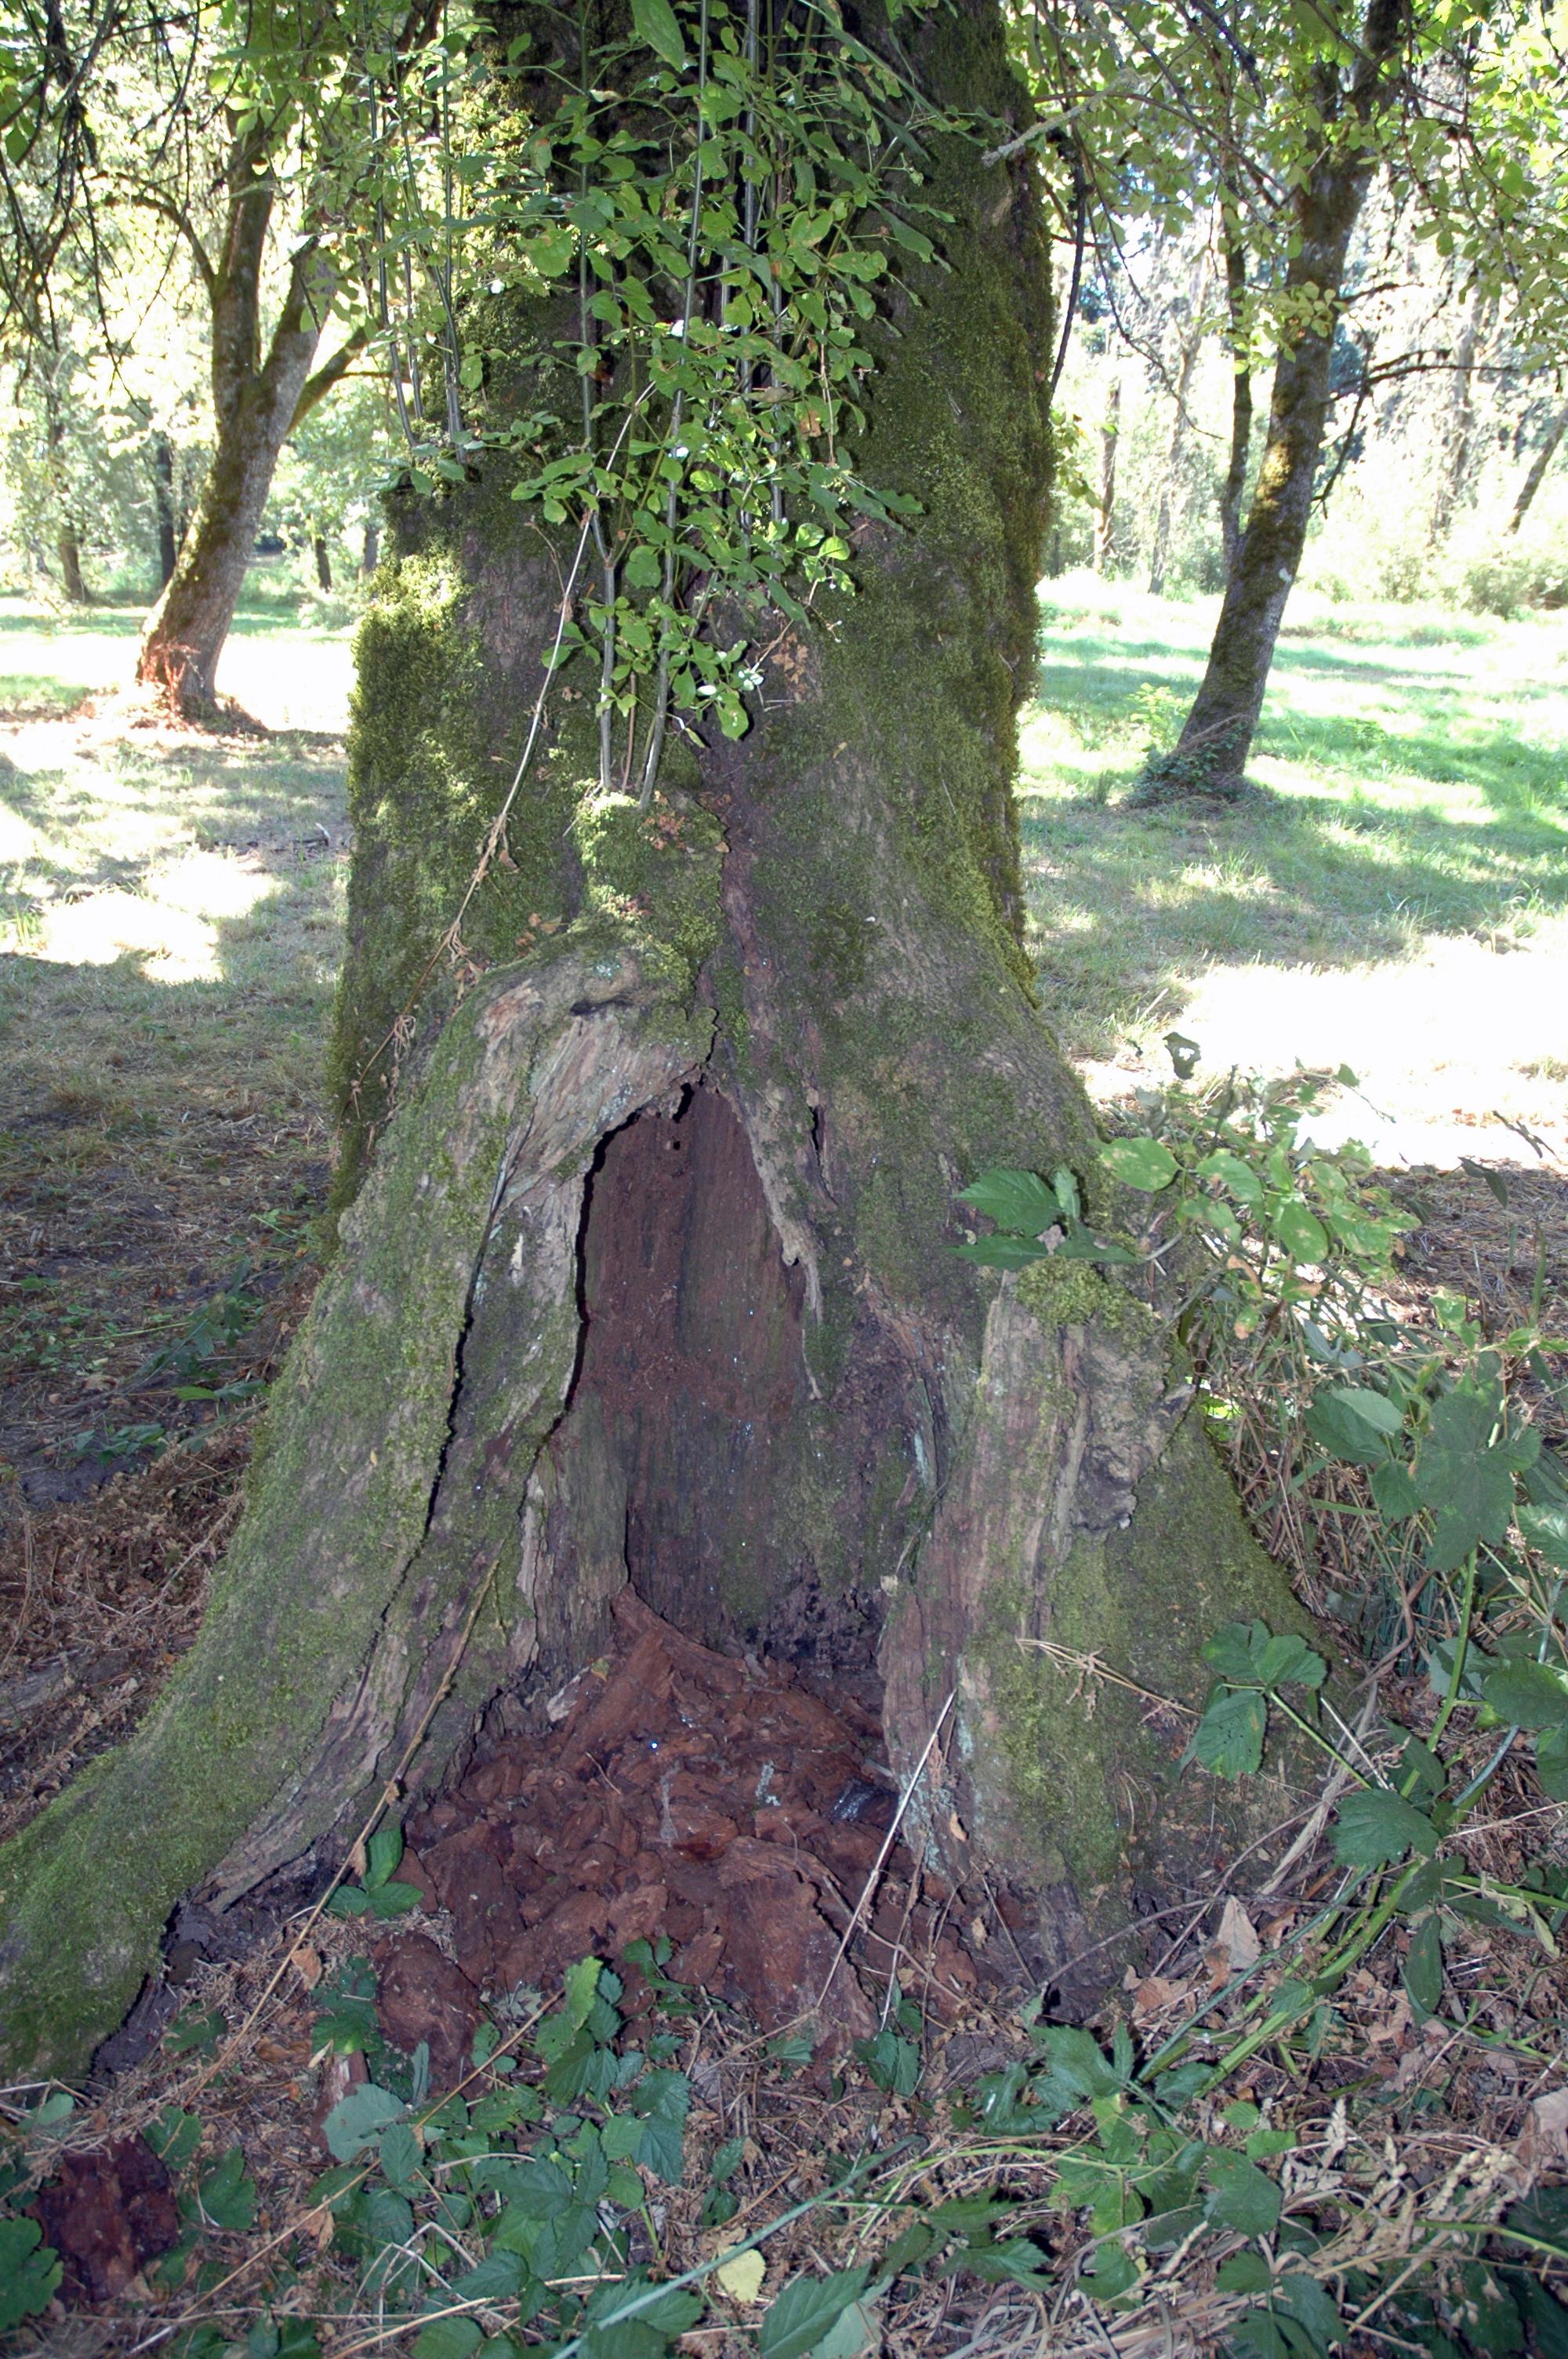 rot at base of tree